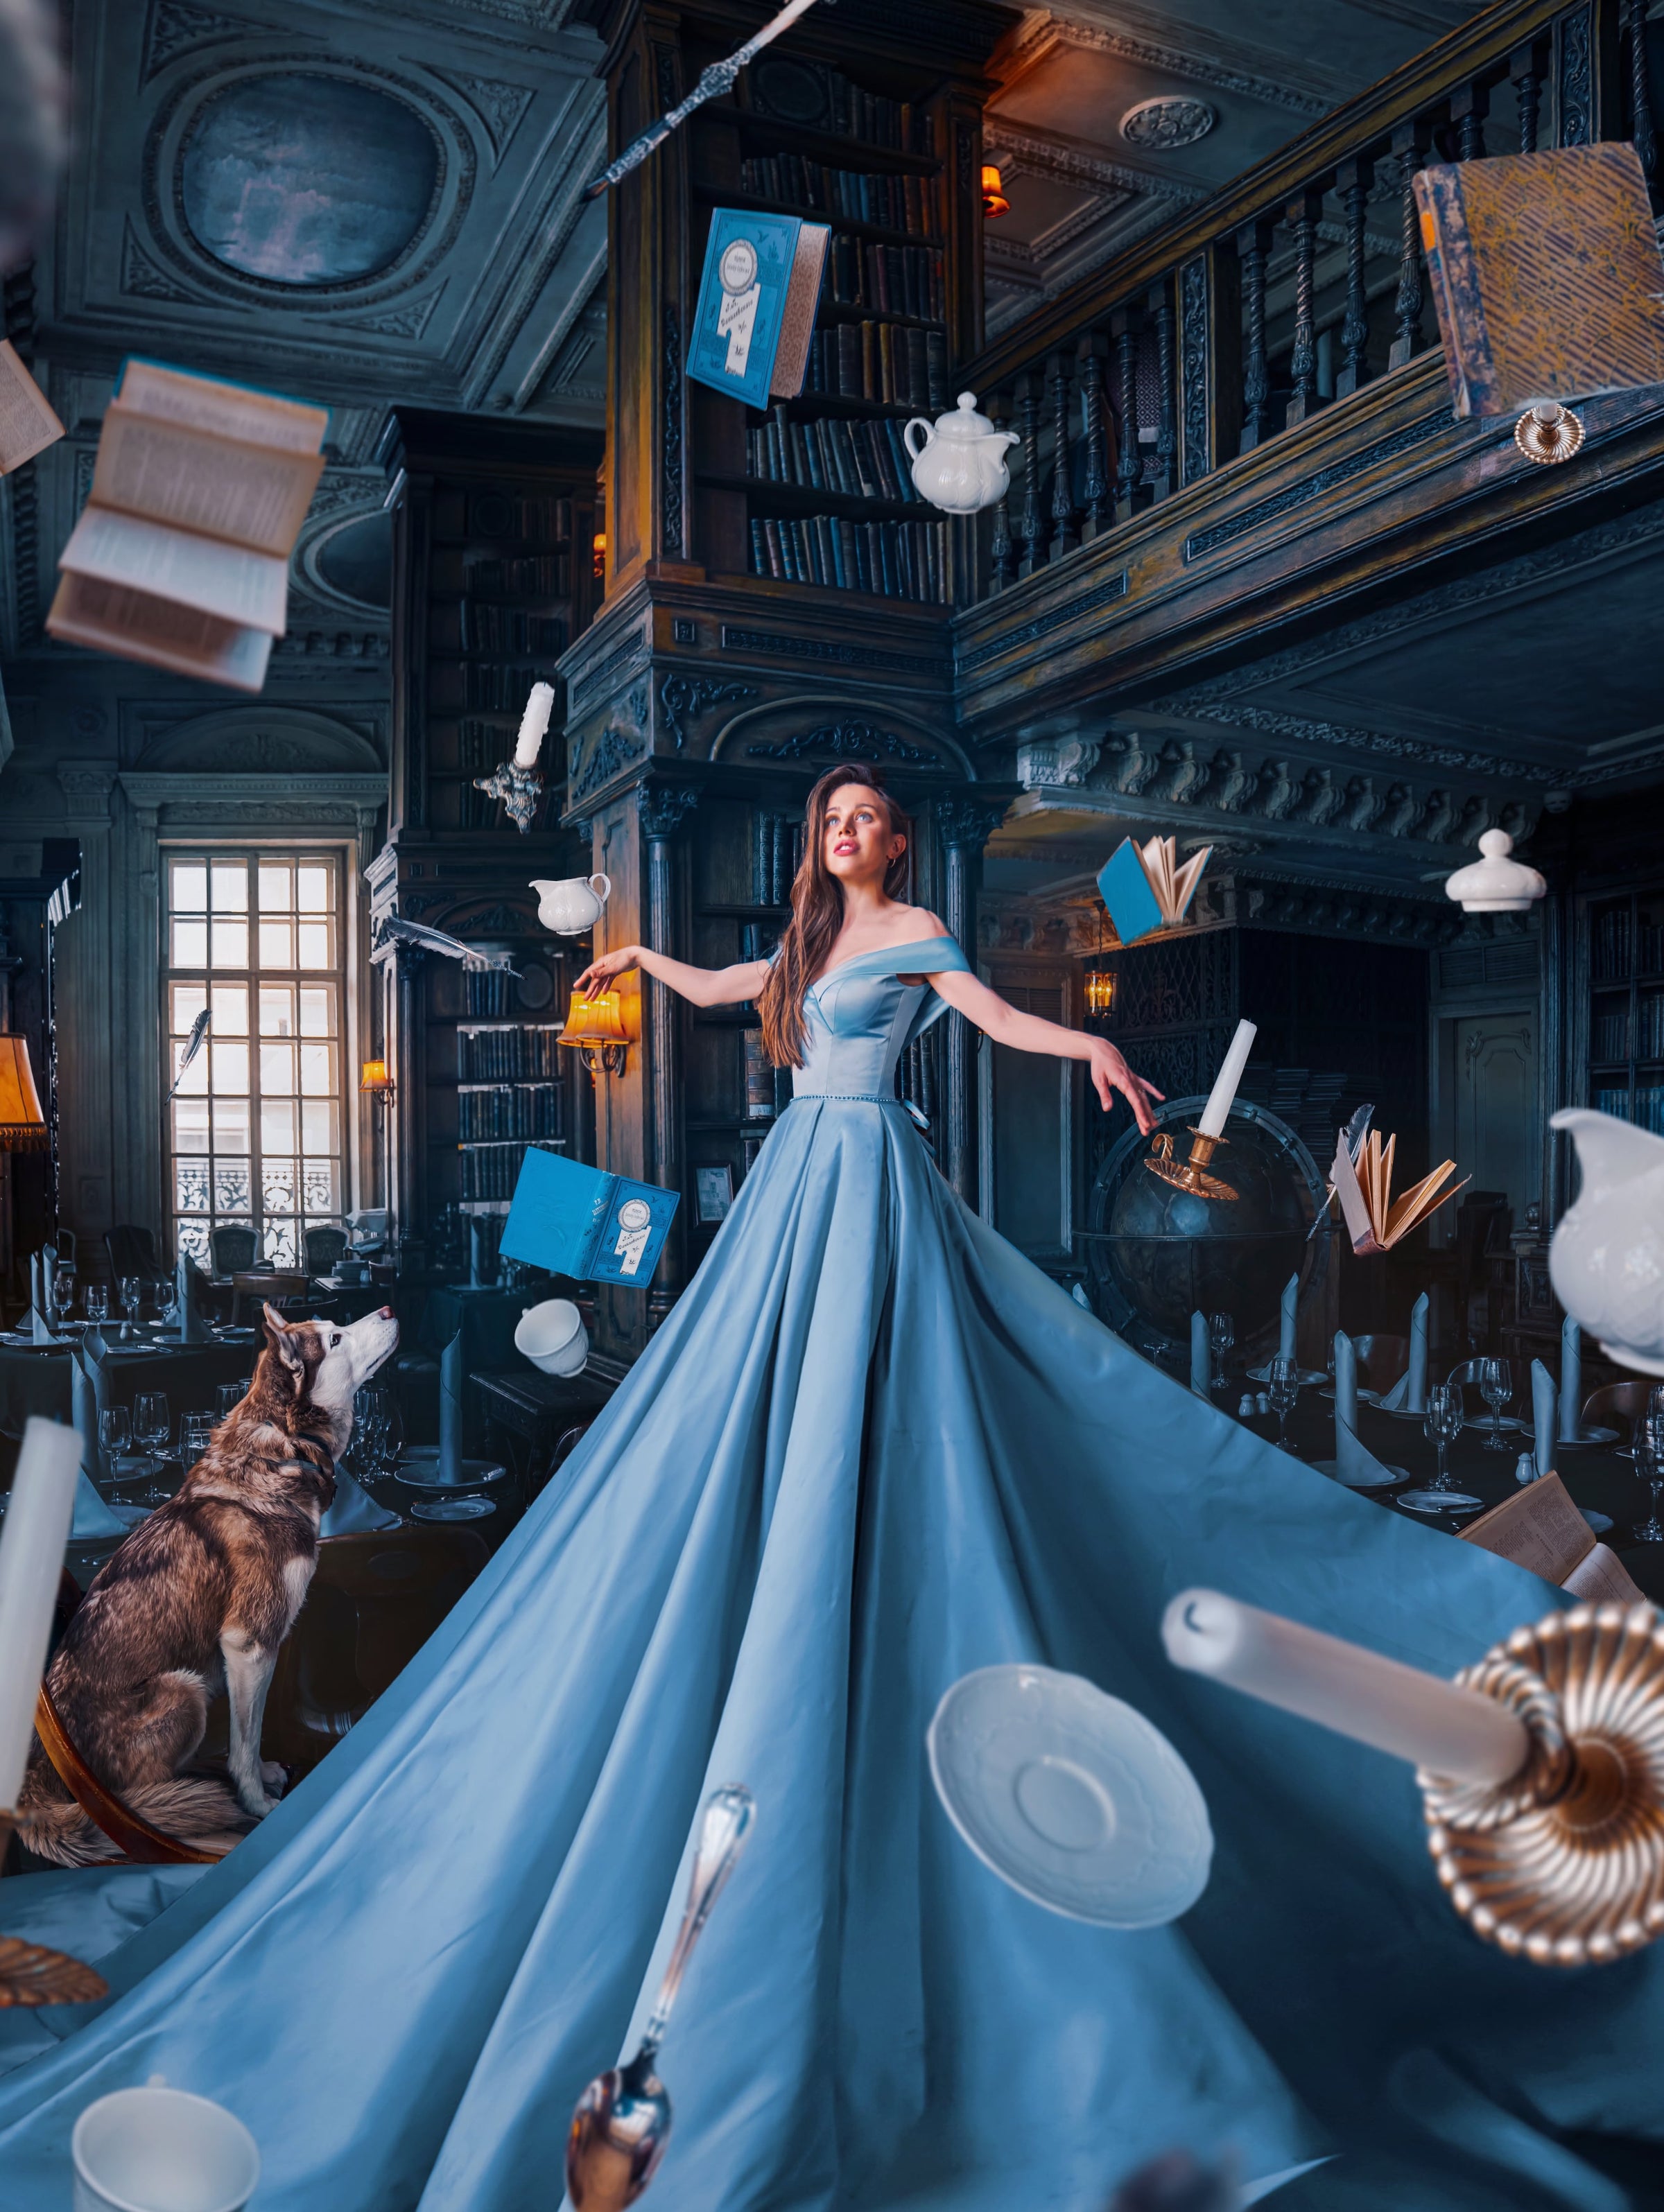 Photographie artistique montrant une princesse en robe bleue entourée d'une ambiance fantastique